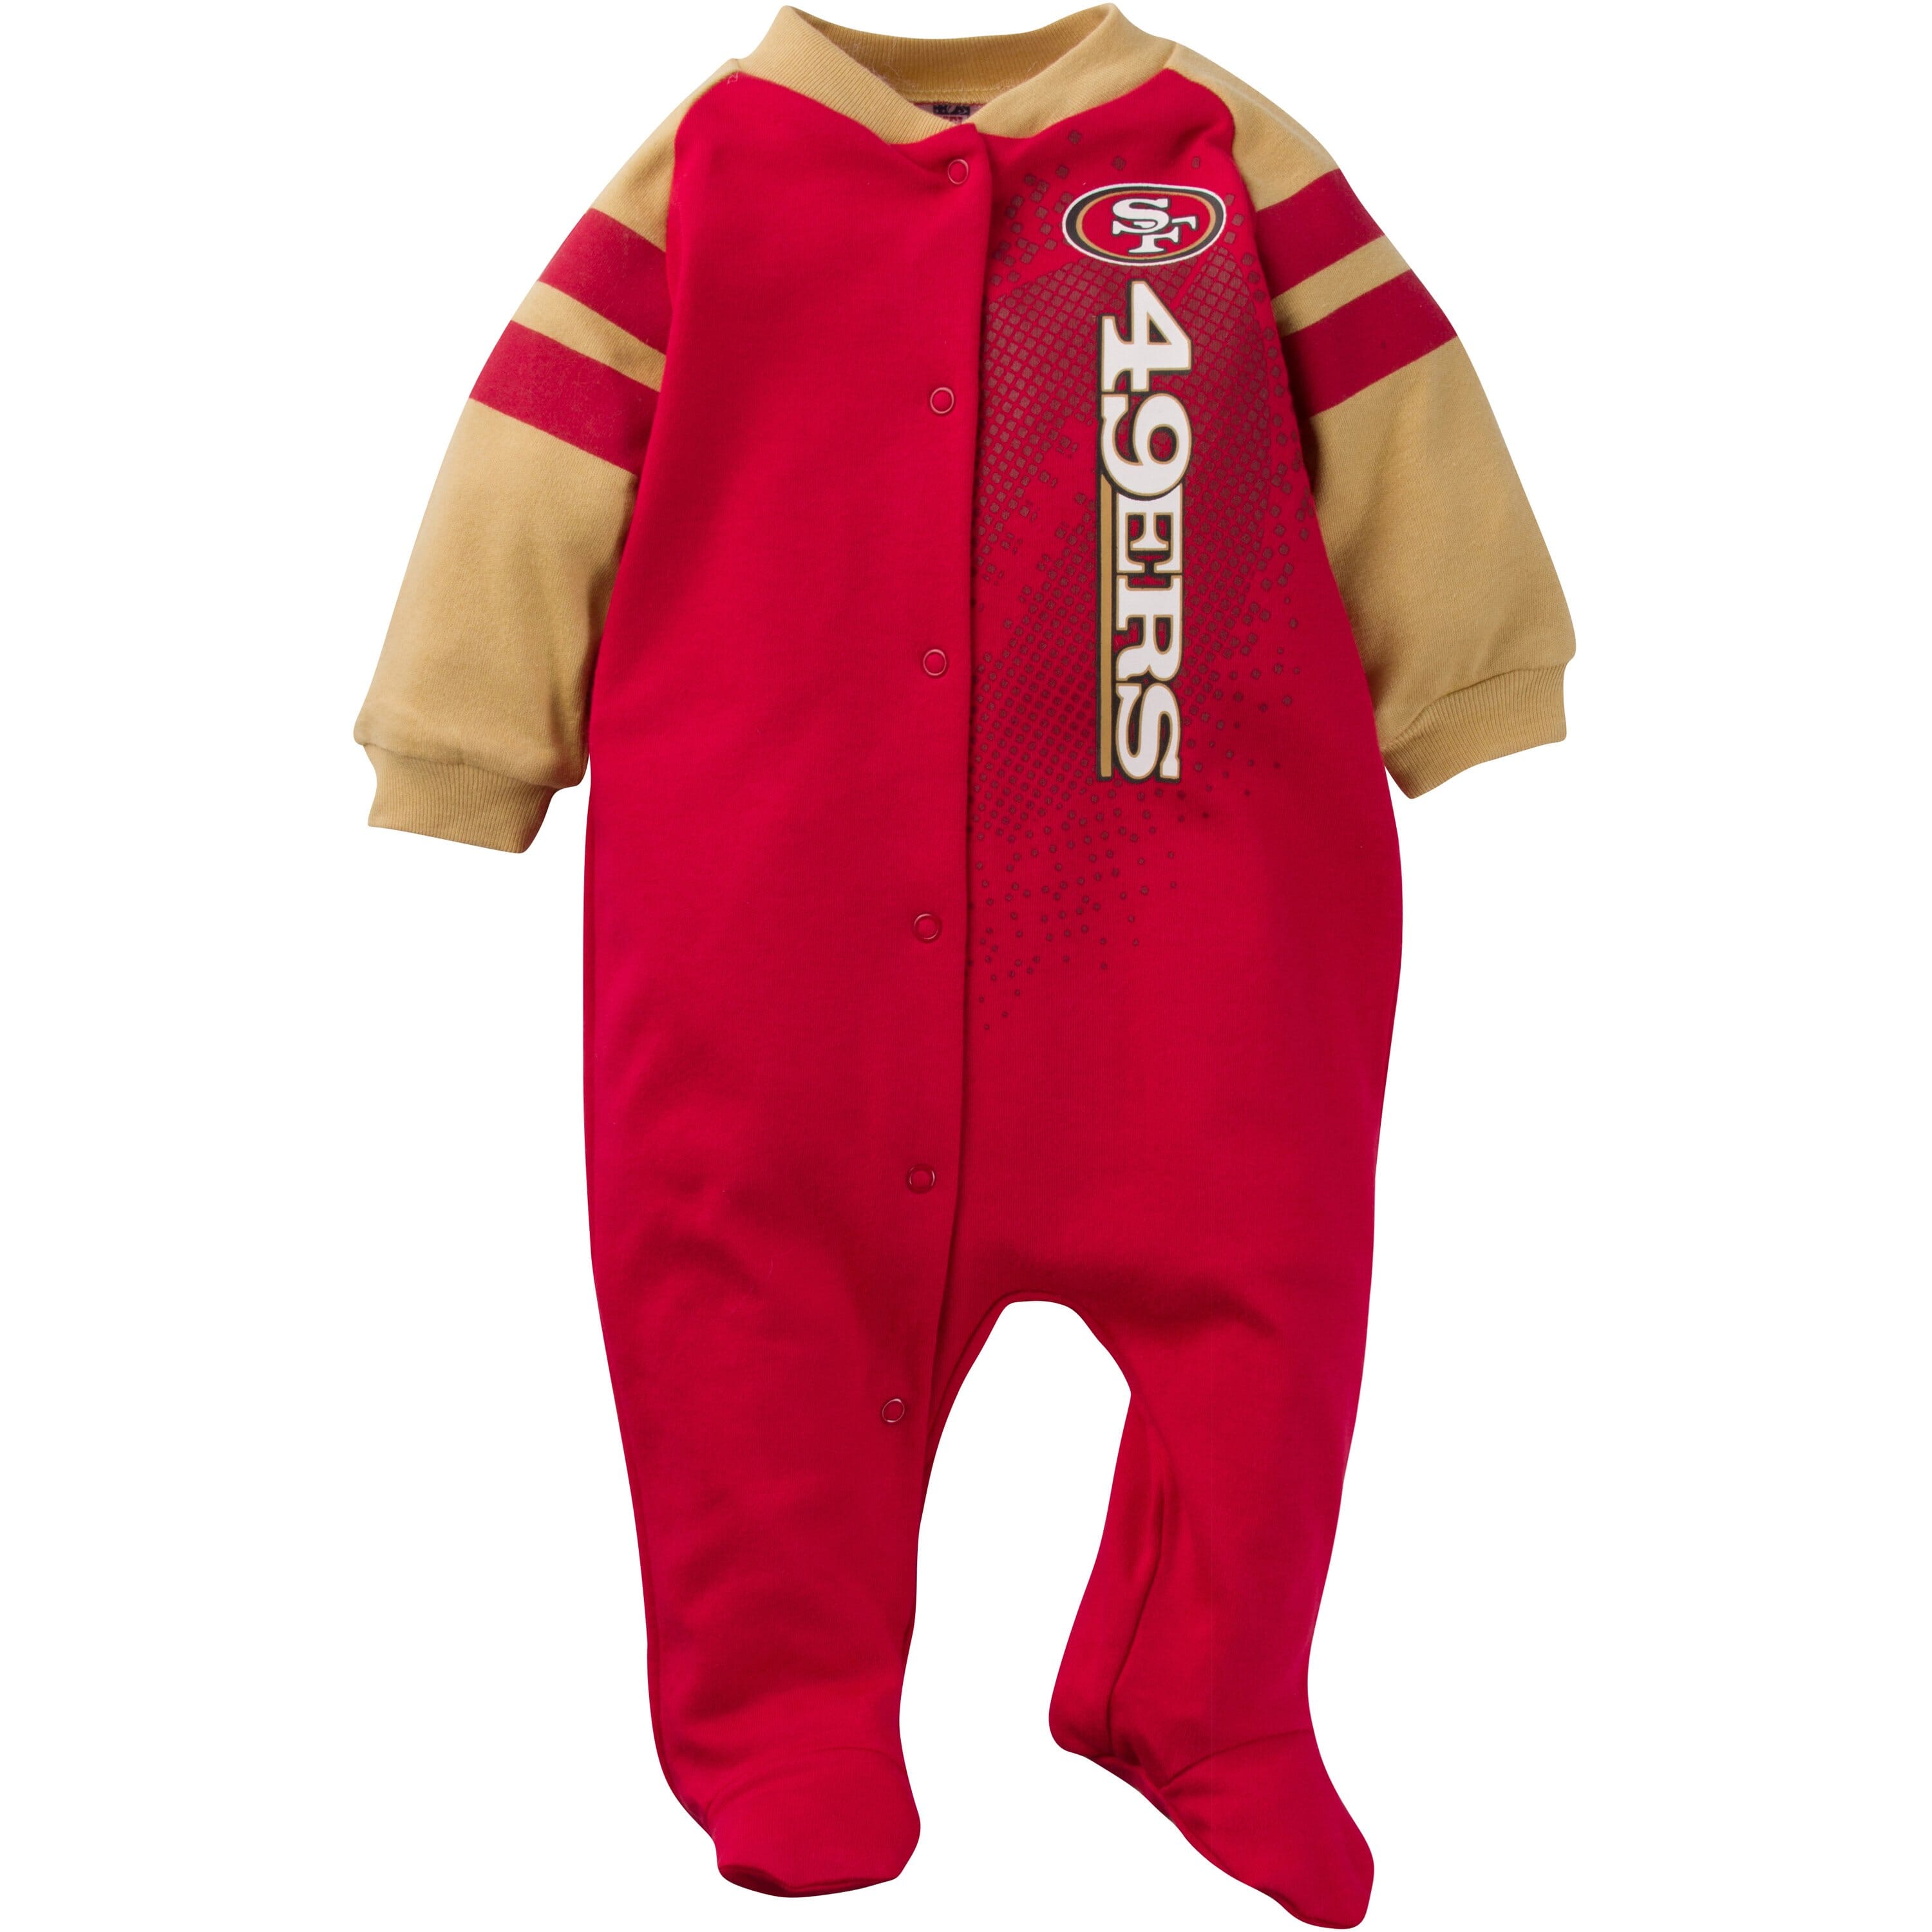 NFL San Francisco 49ers Baby Boys Team Sleep 'N Play Outfit